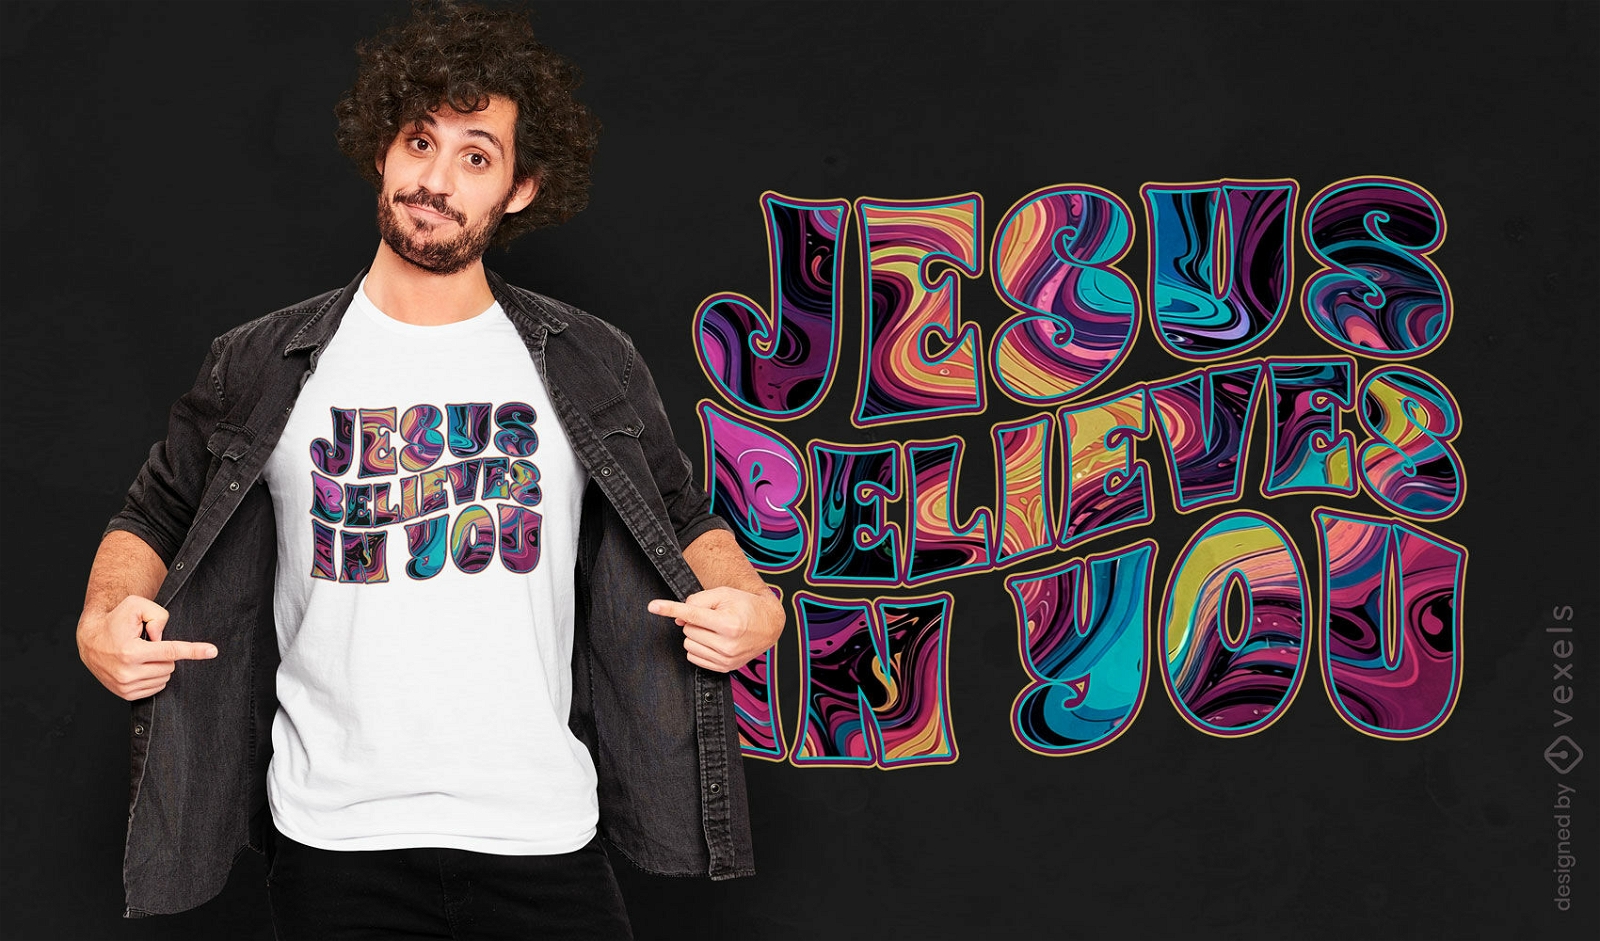 Jesus believe in you t-shirt design